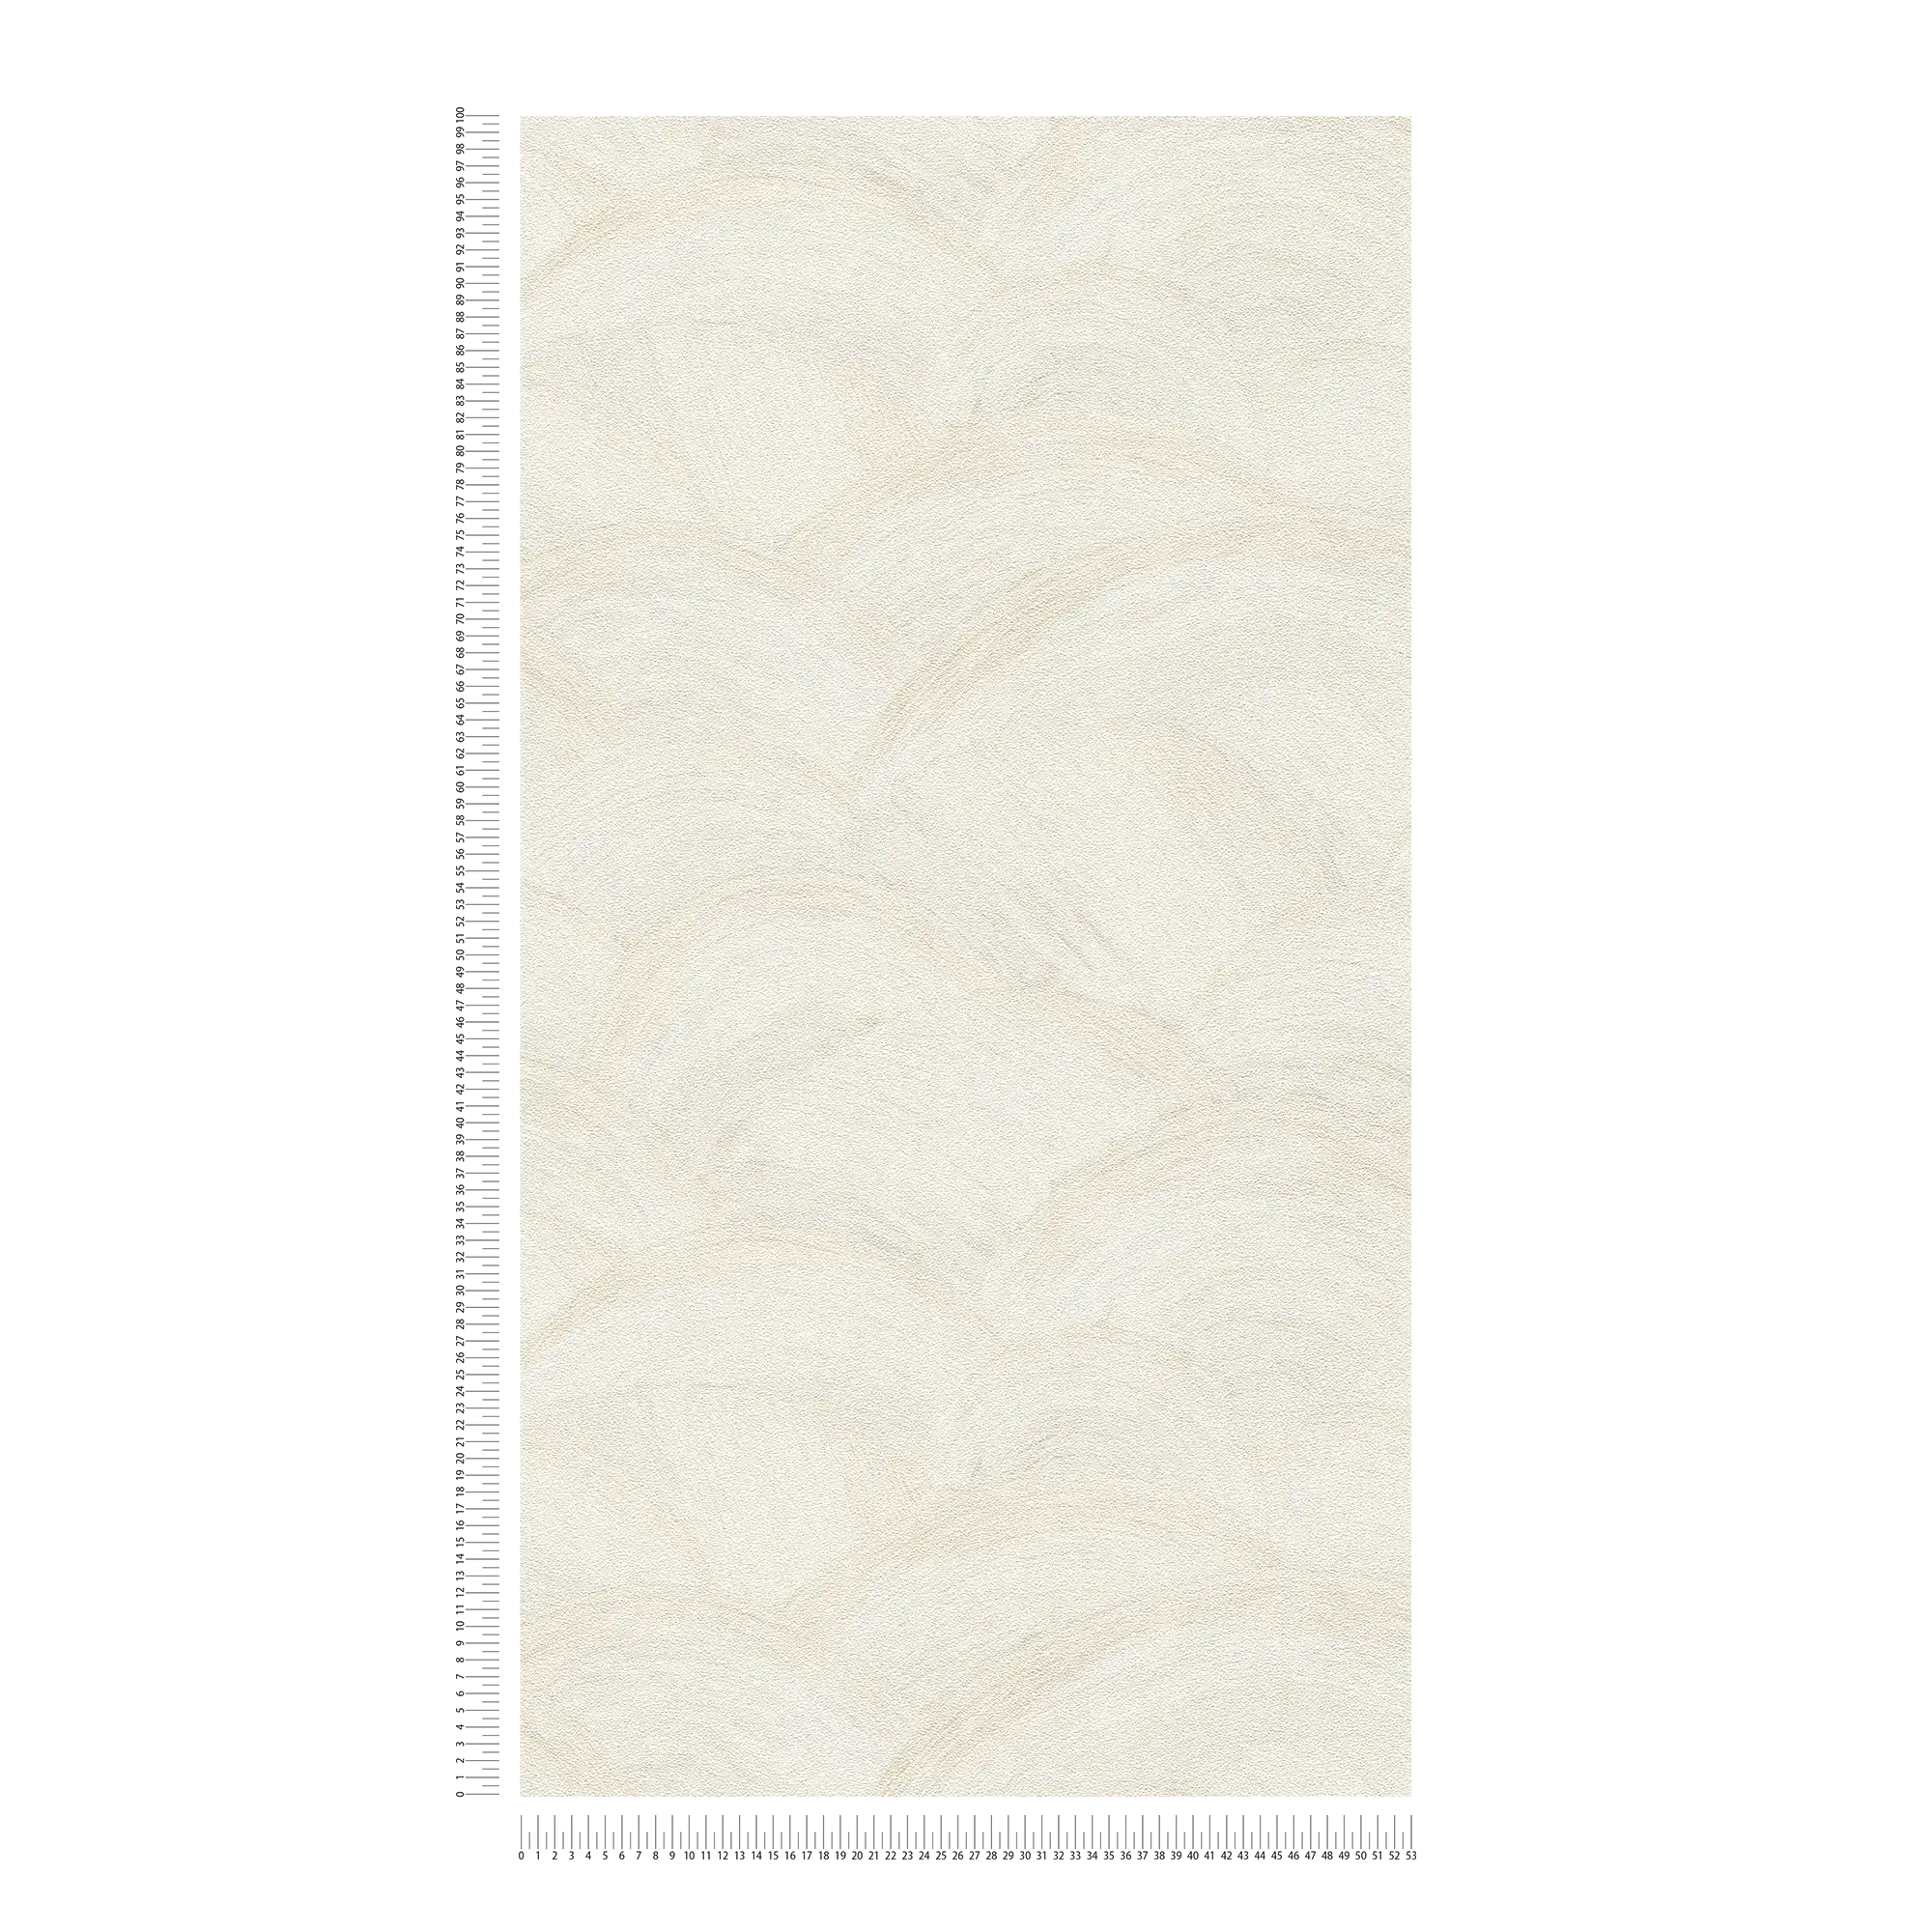             Carta da parati in tessuto non tessuto con sottile motivo a onde - bianco, crema, grigio
        